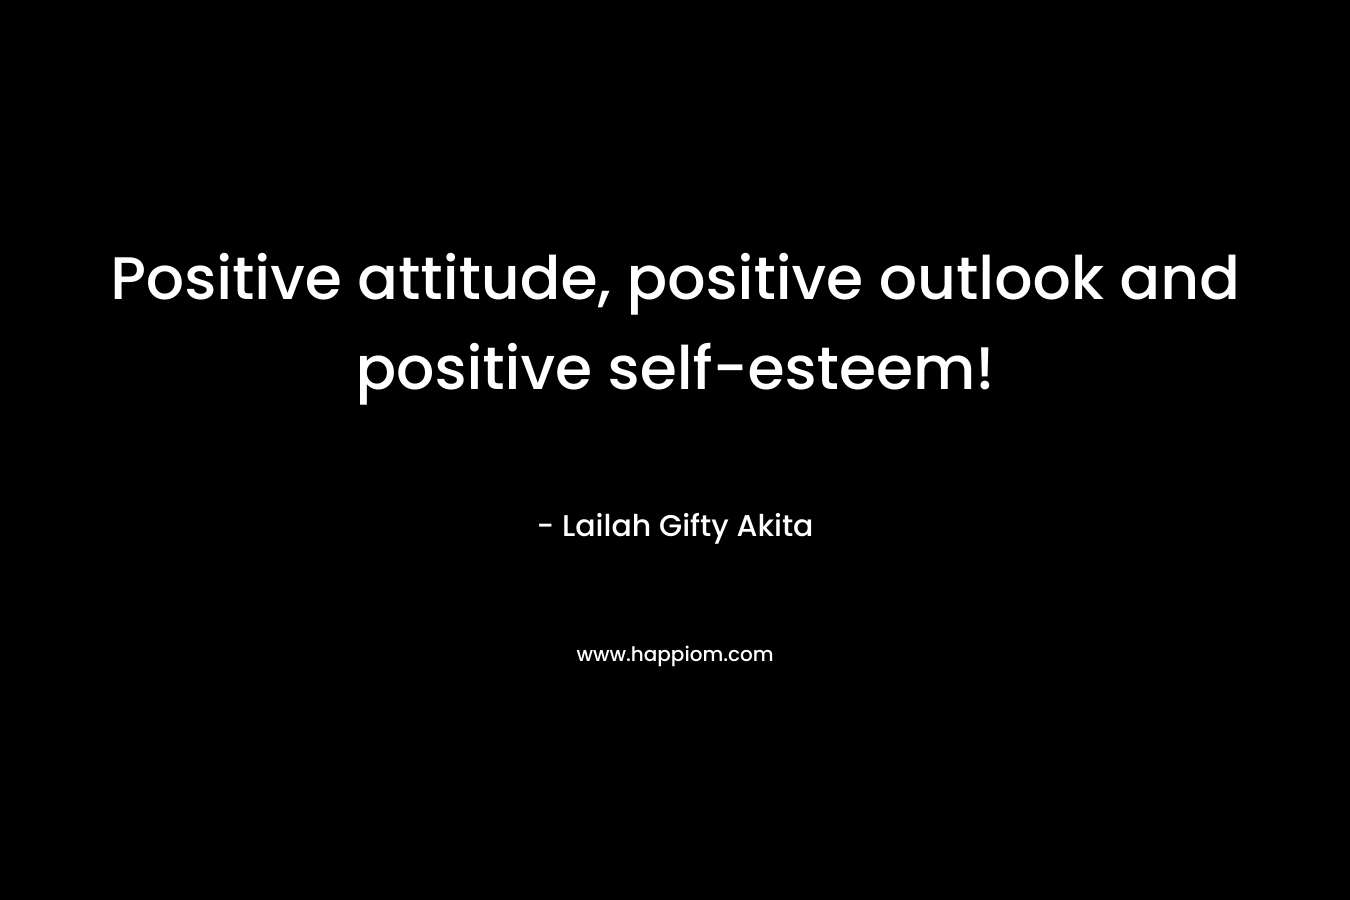 Positive attitude, positive outlook and positive self-esteem!